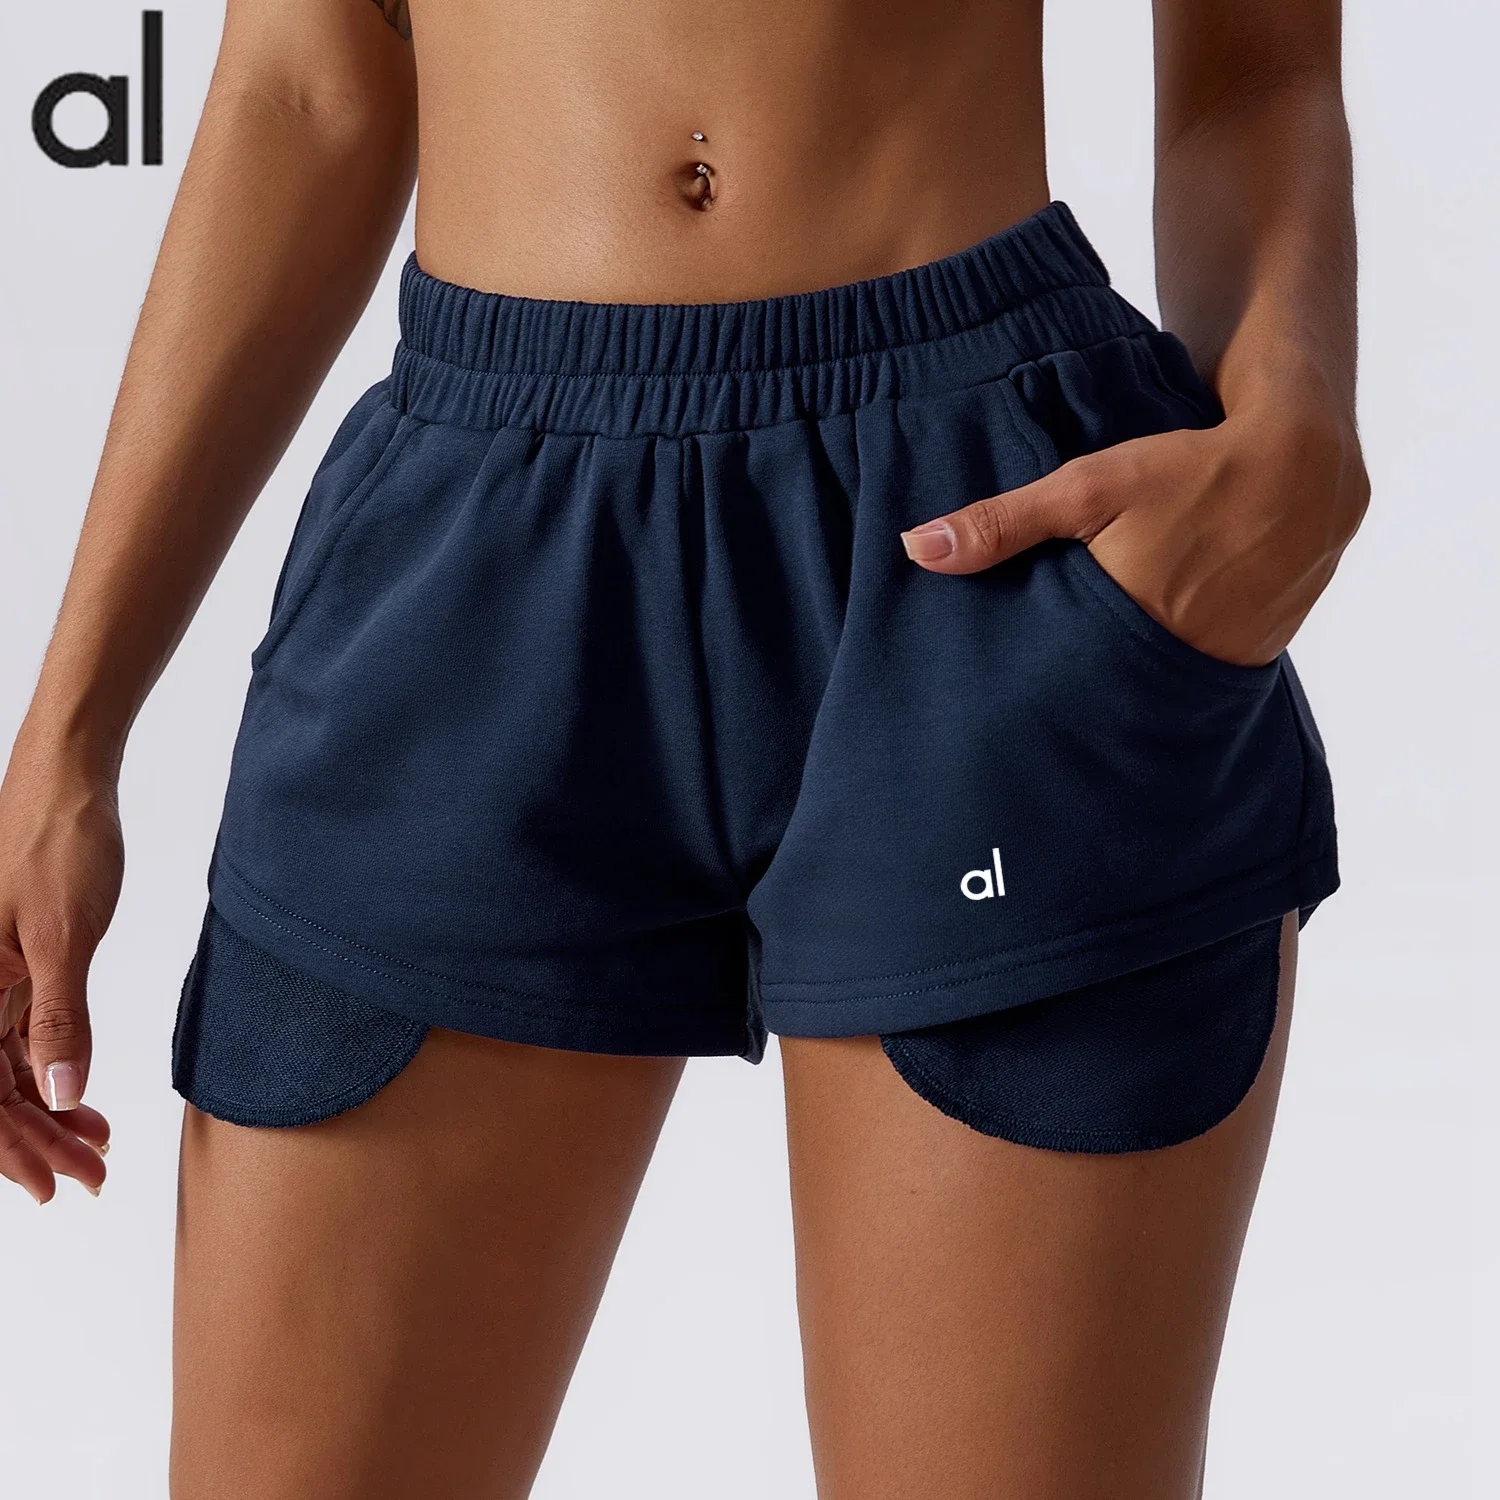 

Женские летние свободные шорты для йоги AL, повседневные спортивные штаны для фитнеса, дышащие пляжные брюки, шорты для танцев и йоги